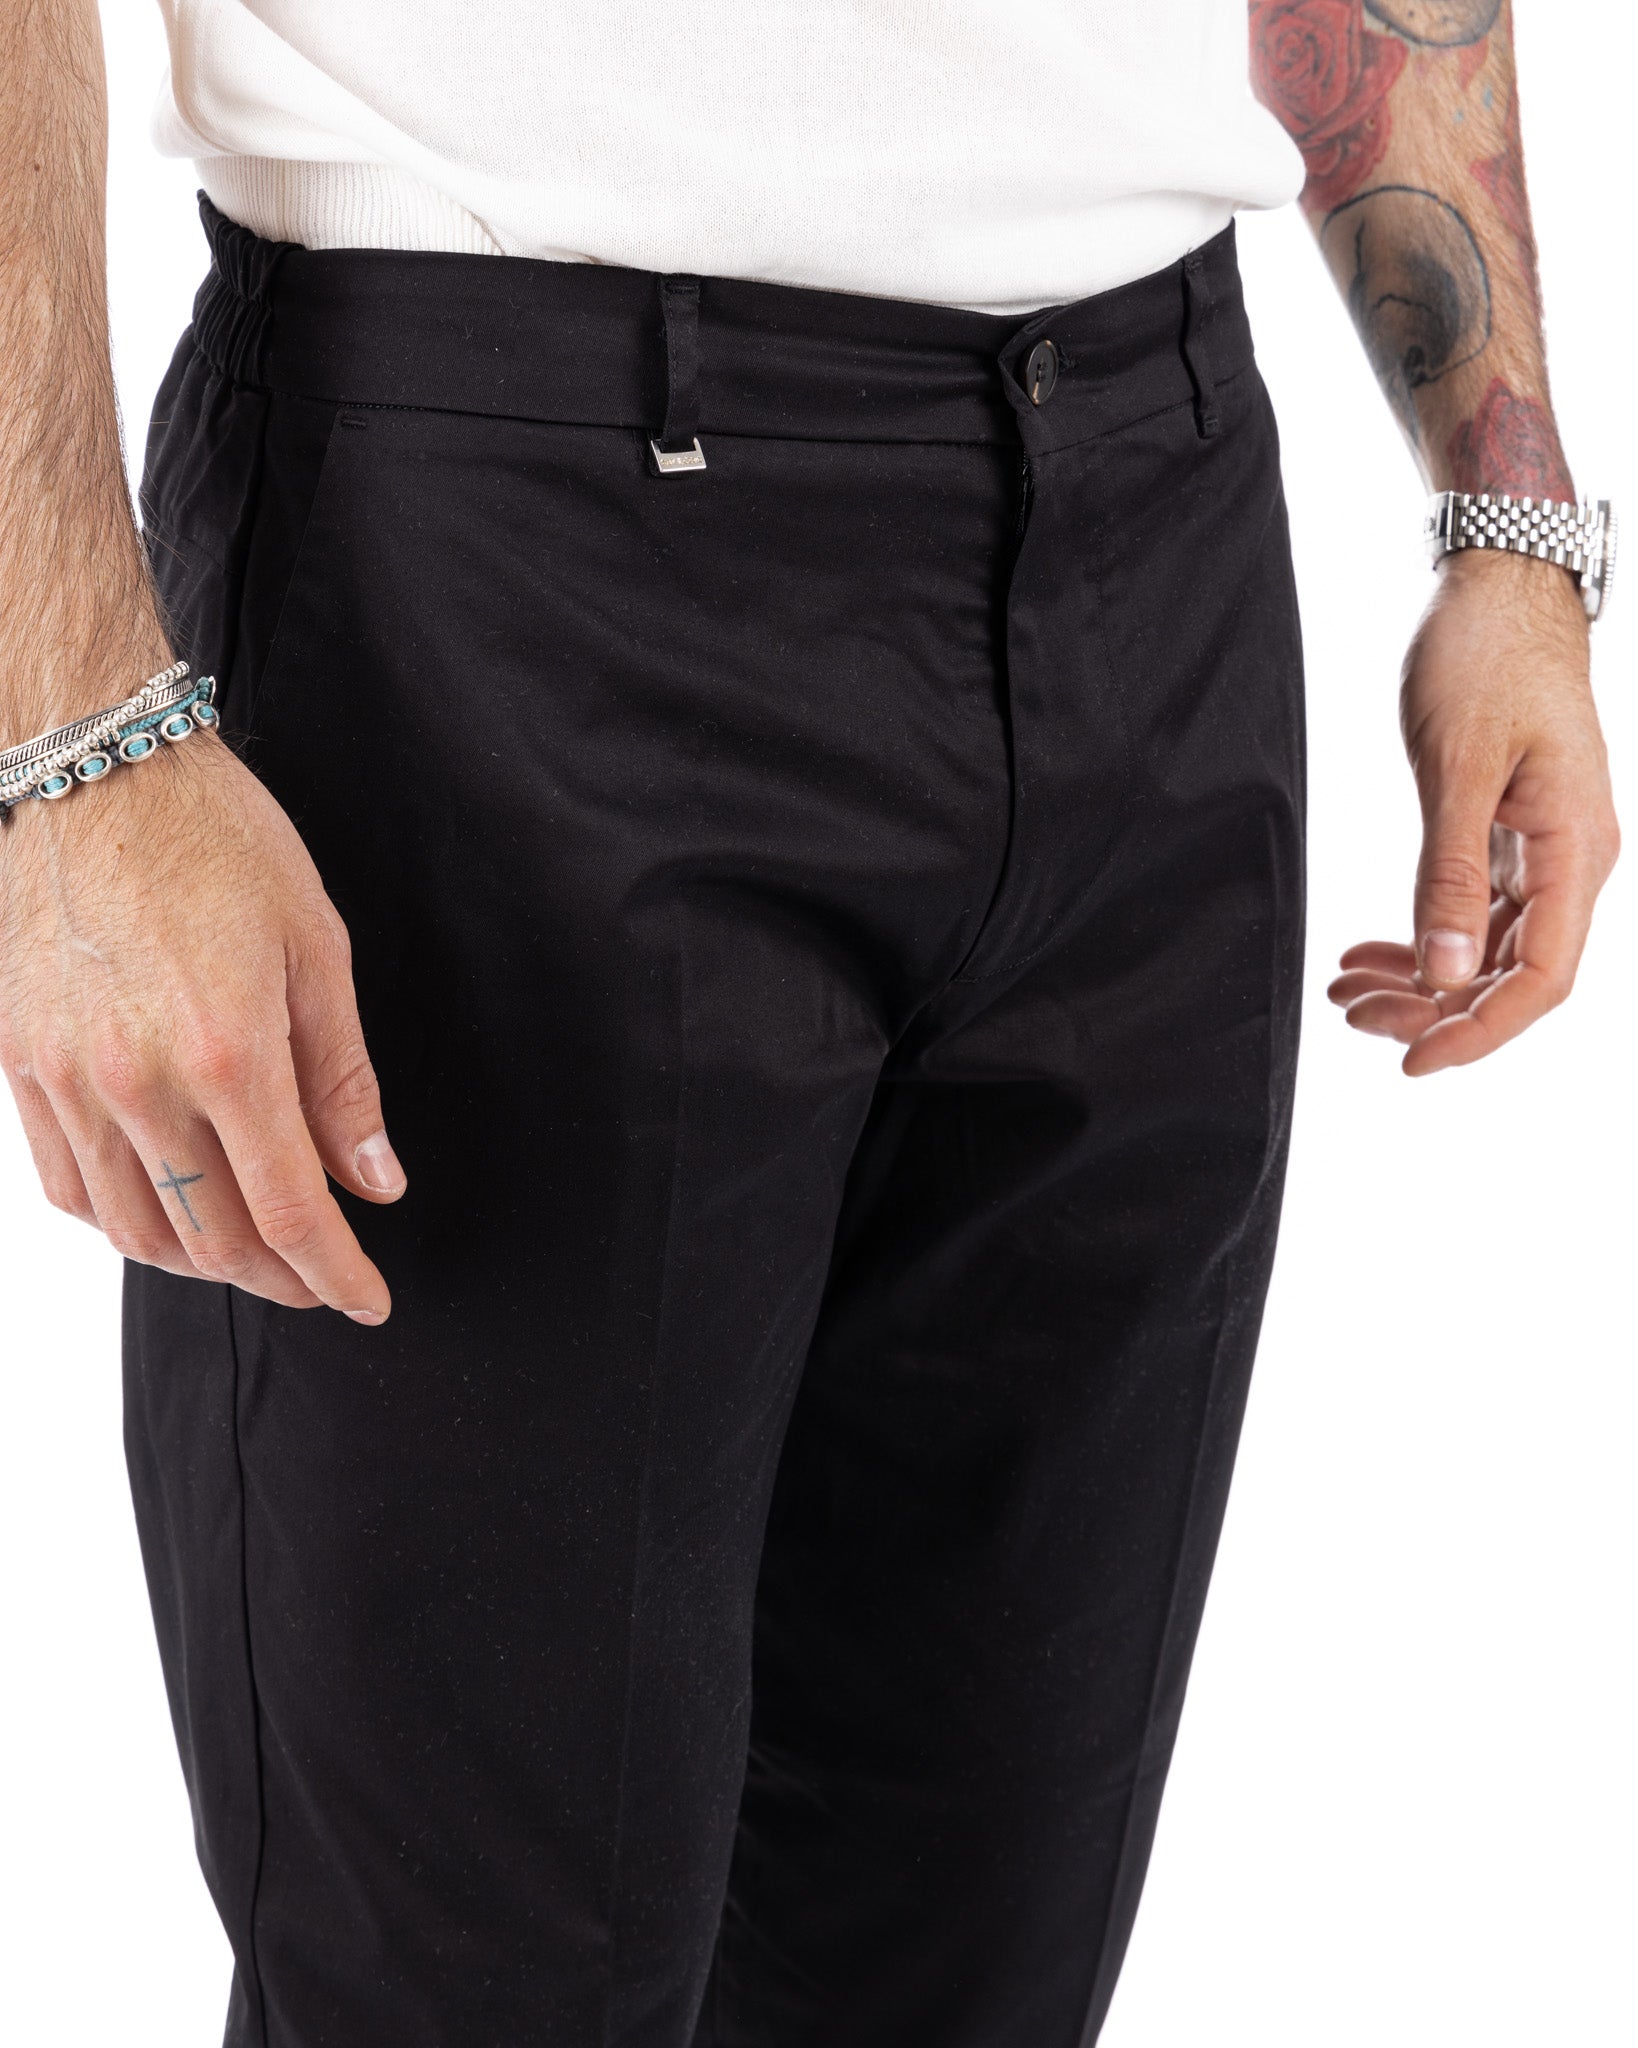 Elder - pantalone capri nero in cotone estivo